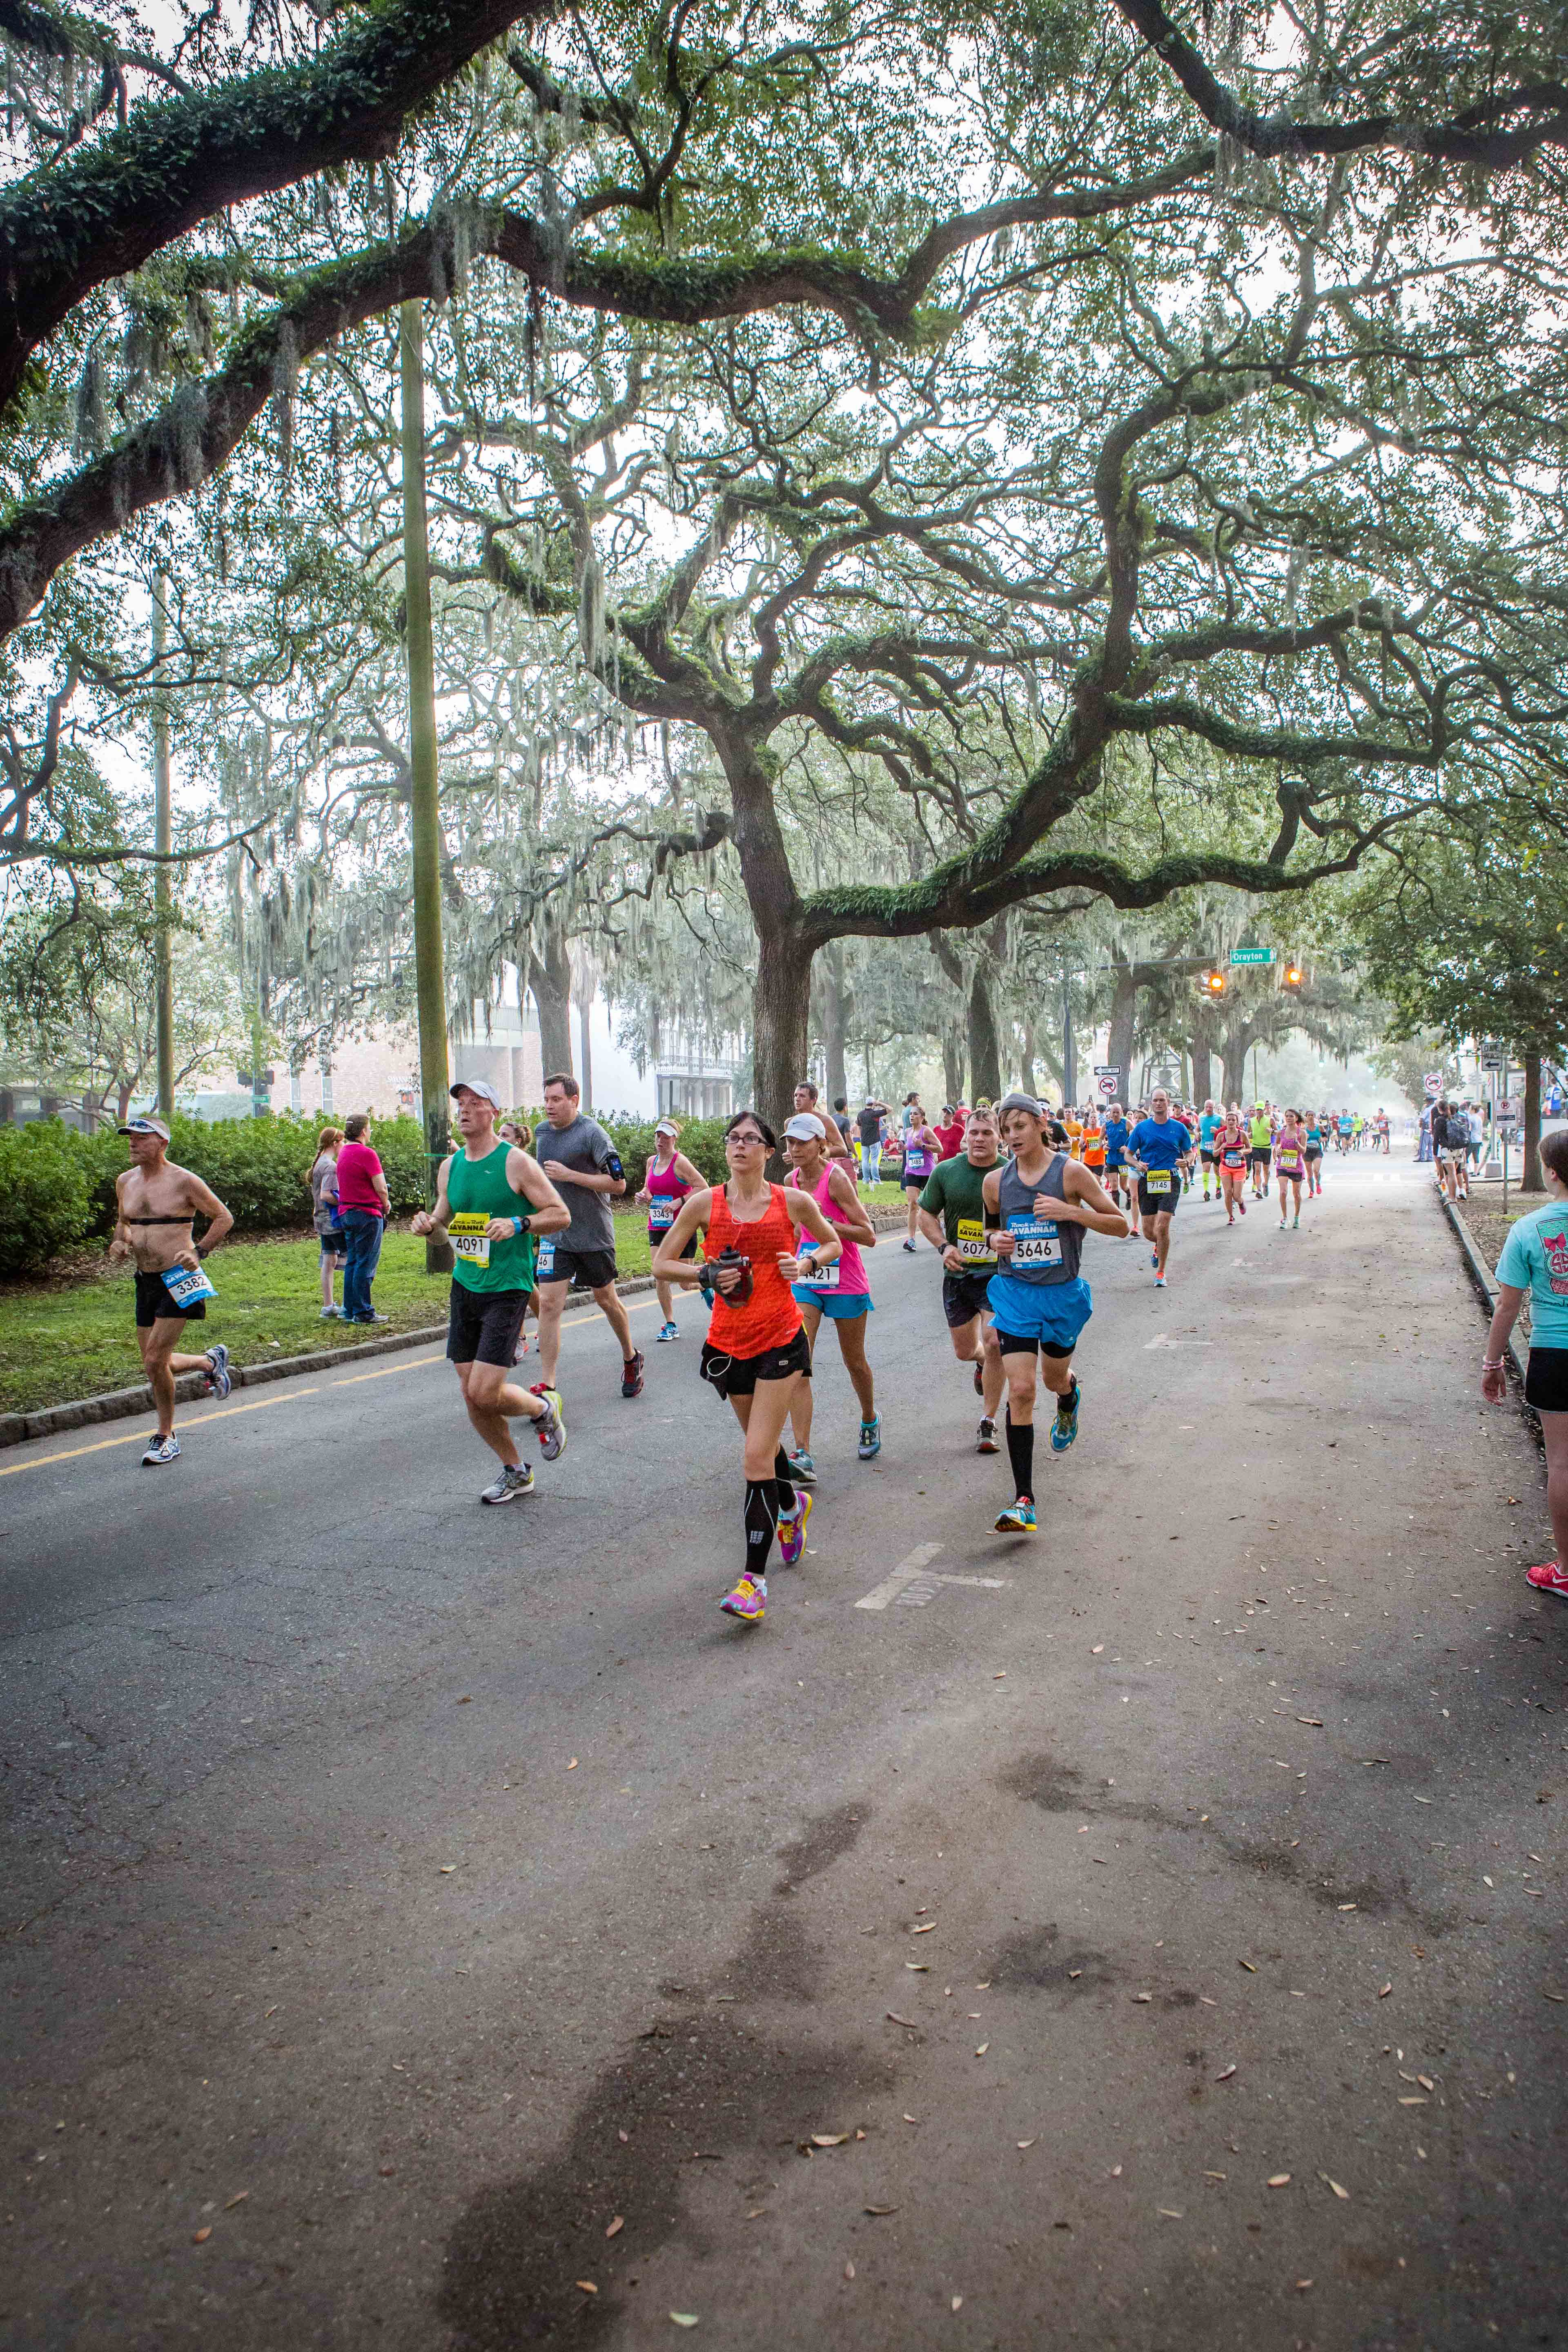 Savannah Rock 'N' Roll Marathon Hosts More Than 21,500 Runners